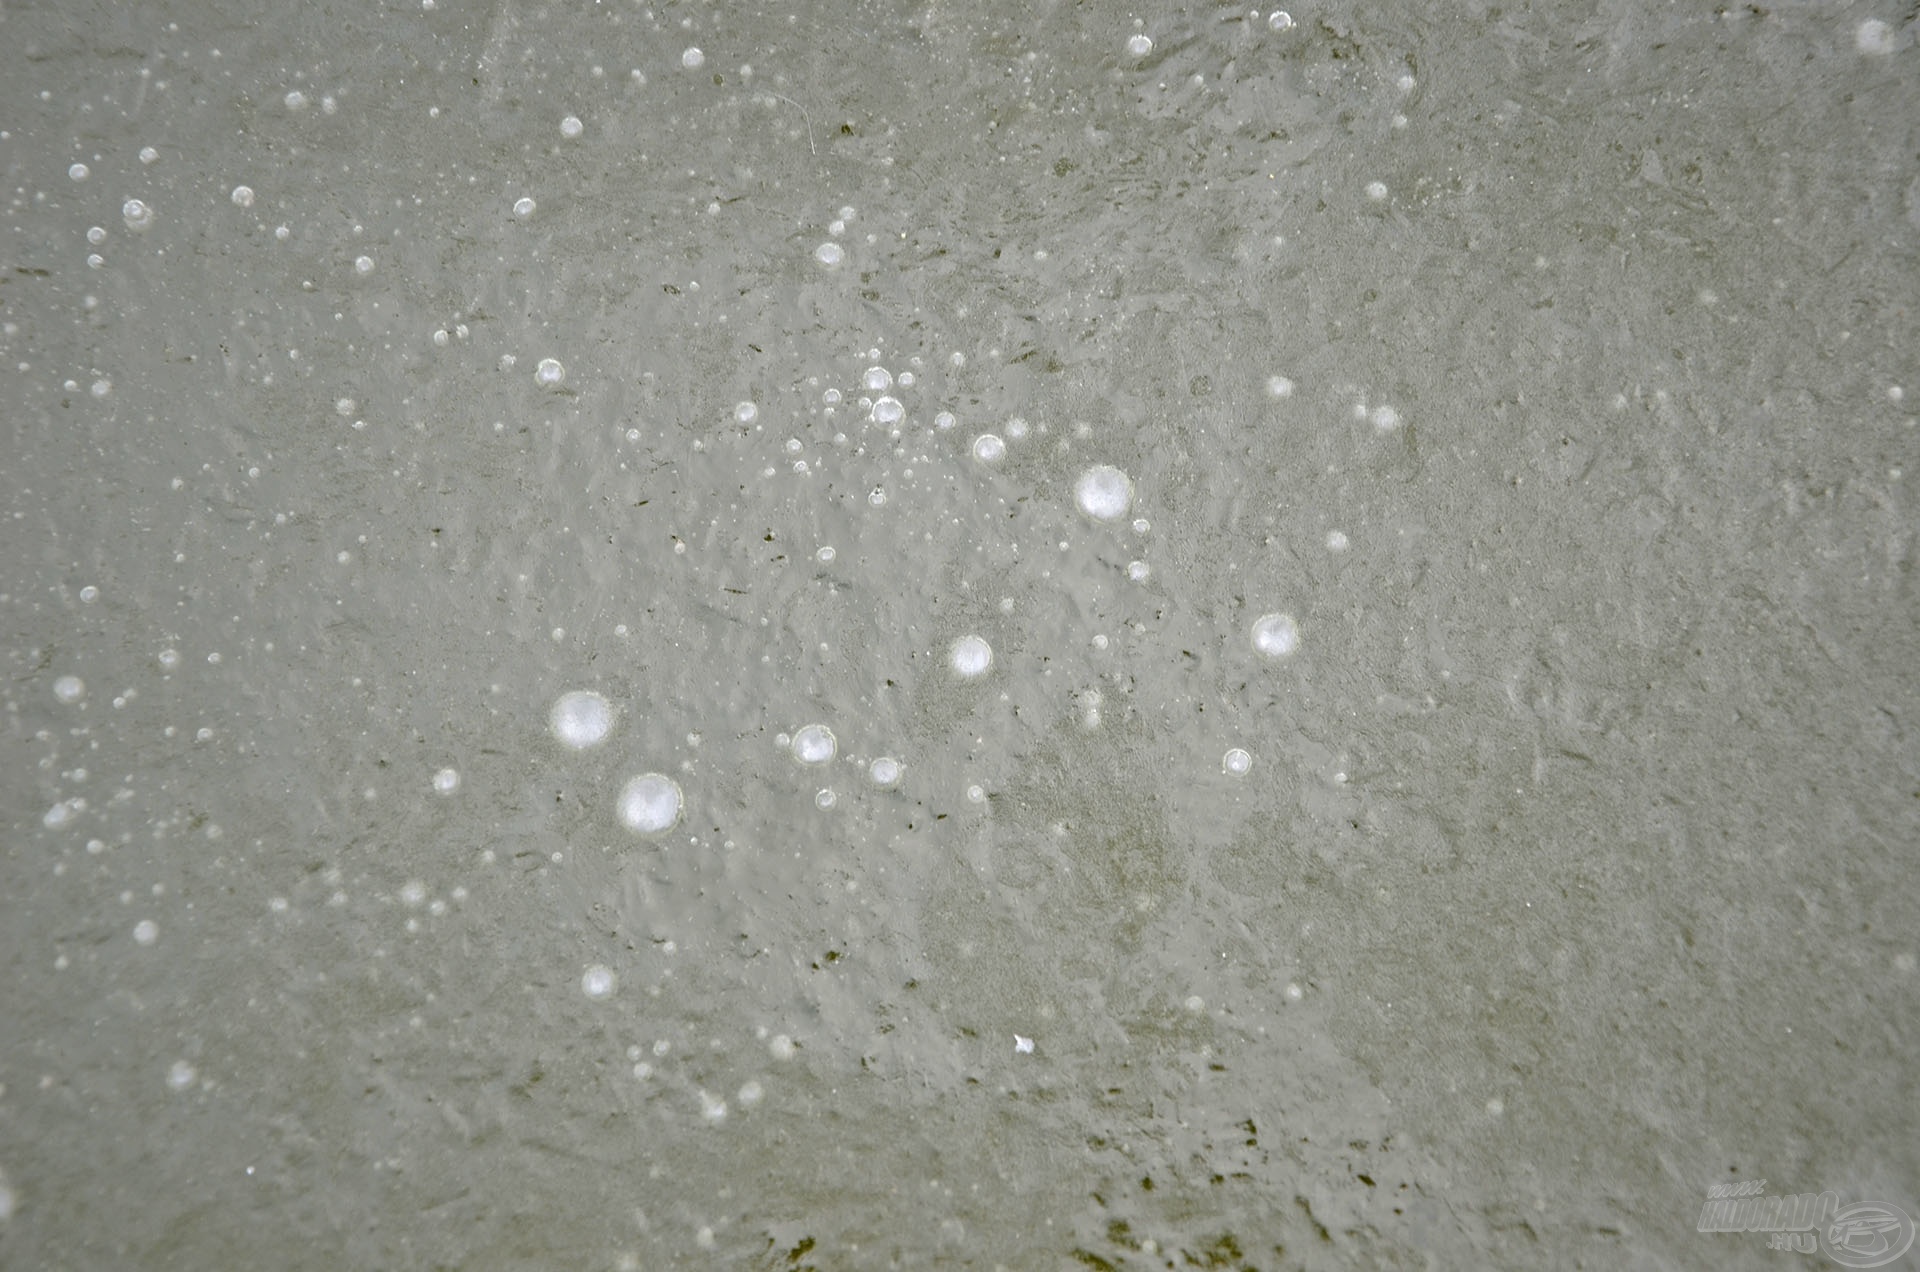 Ha ilyen apró buborékokat láttunk a jégbe fagyva, az azt jelentette, hogy az éjszaka folyamán itt halak voltak!